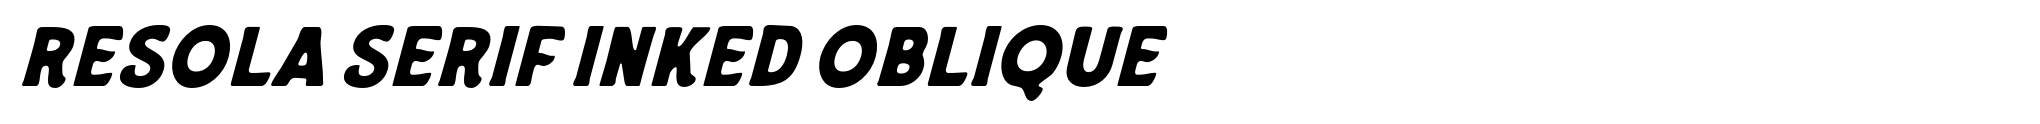 Resola Serif Inked Oblique image